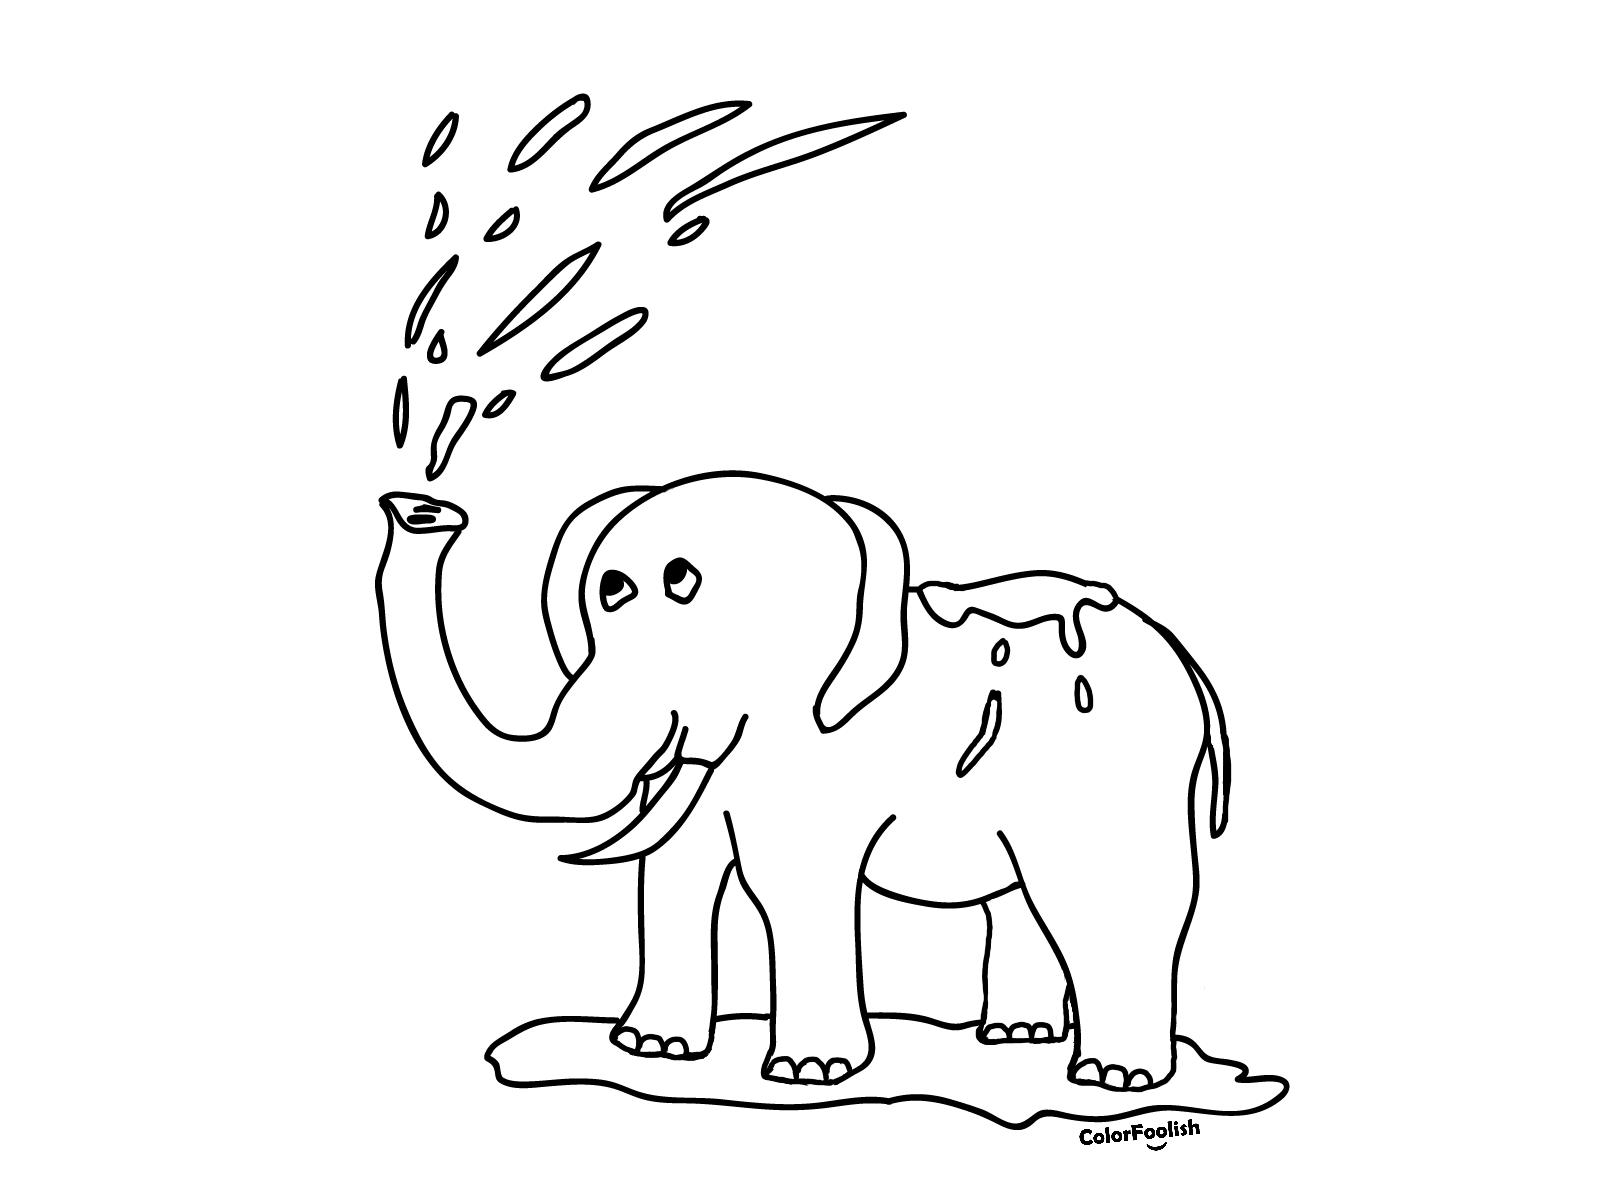 Kleur bladsy van 'n olifant wat met water speel